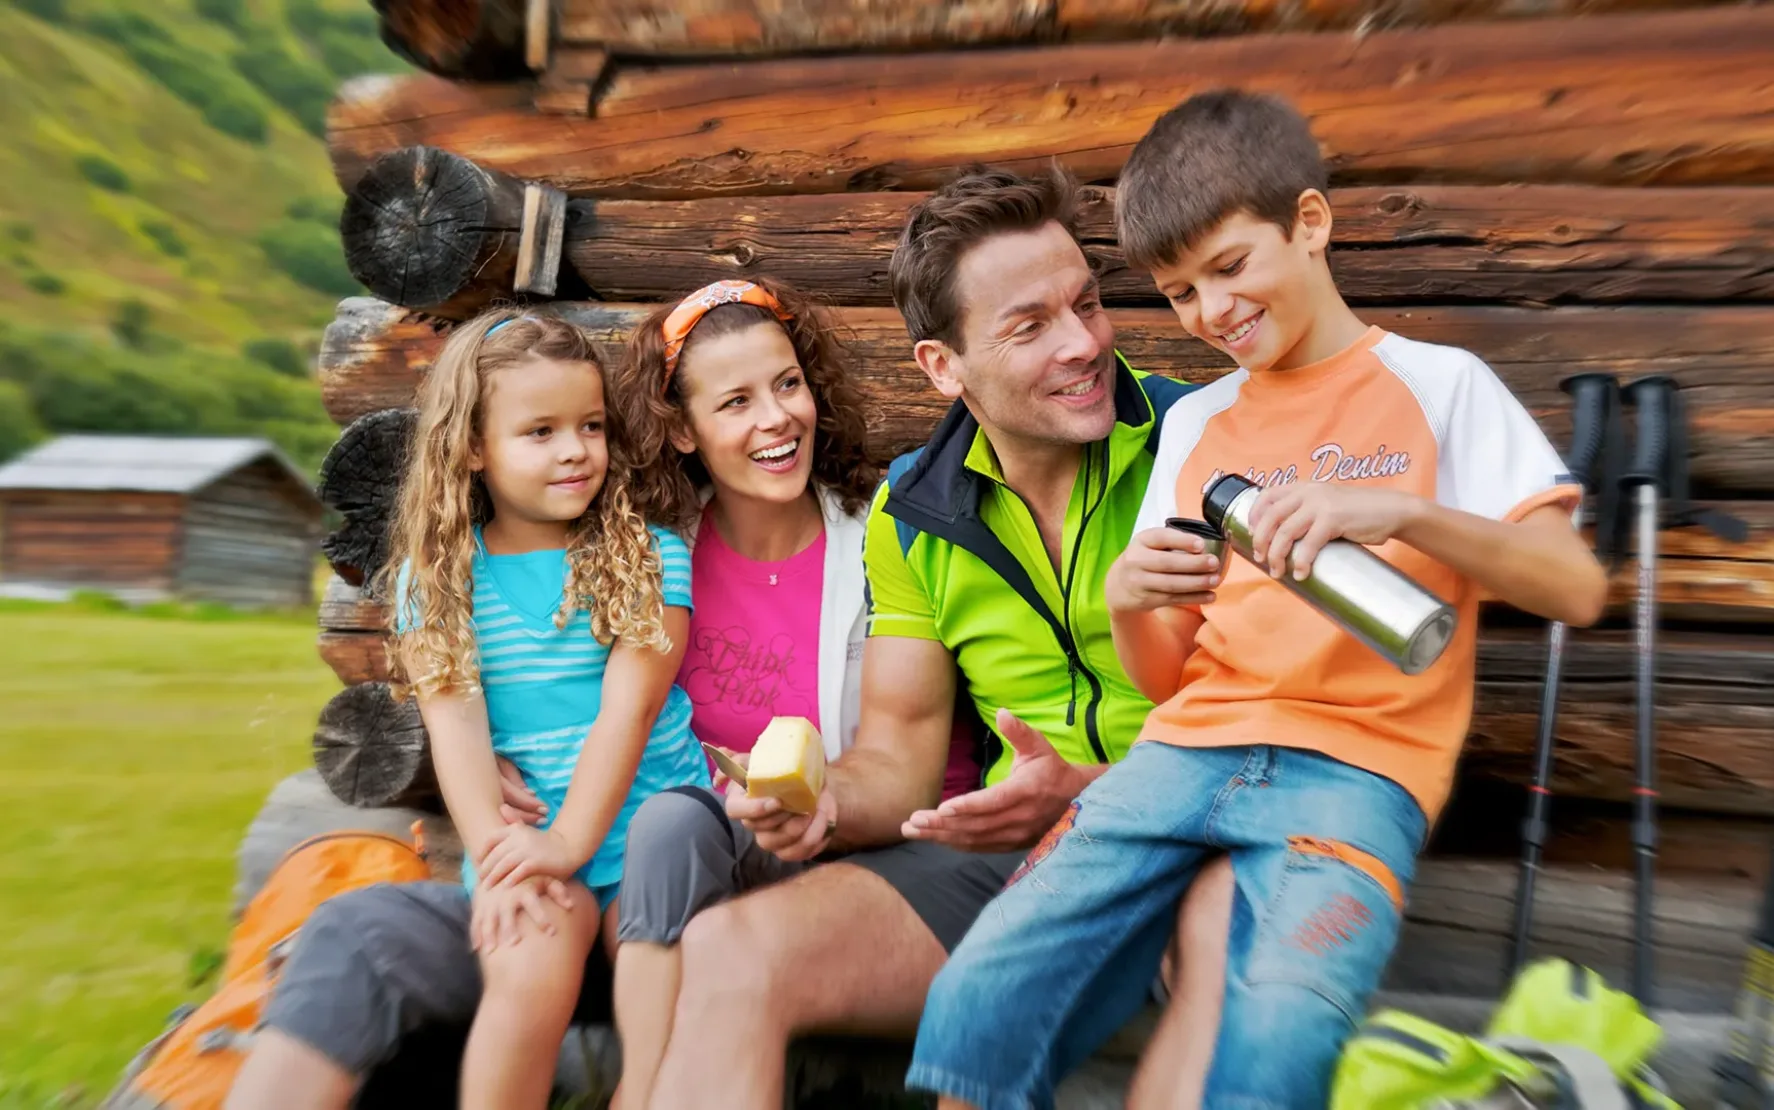 Eine Gruppe von Menschen, darunter zwei Erwachsene und zwei Kinder, sitzt draußen auf einer Holzkonstruktion. Ein Kind reicht einem anderen eine Wasserflasche, während alle lächeln. Im Hintergrund ist Wanderausrüstung zu sehen.